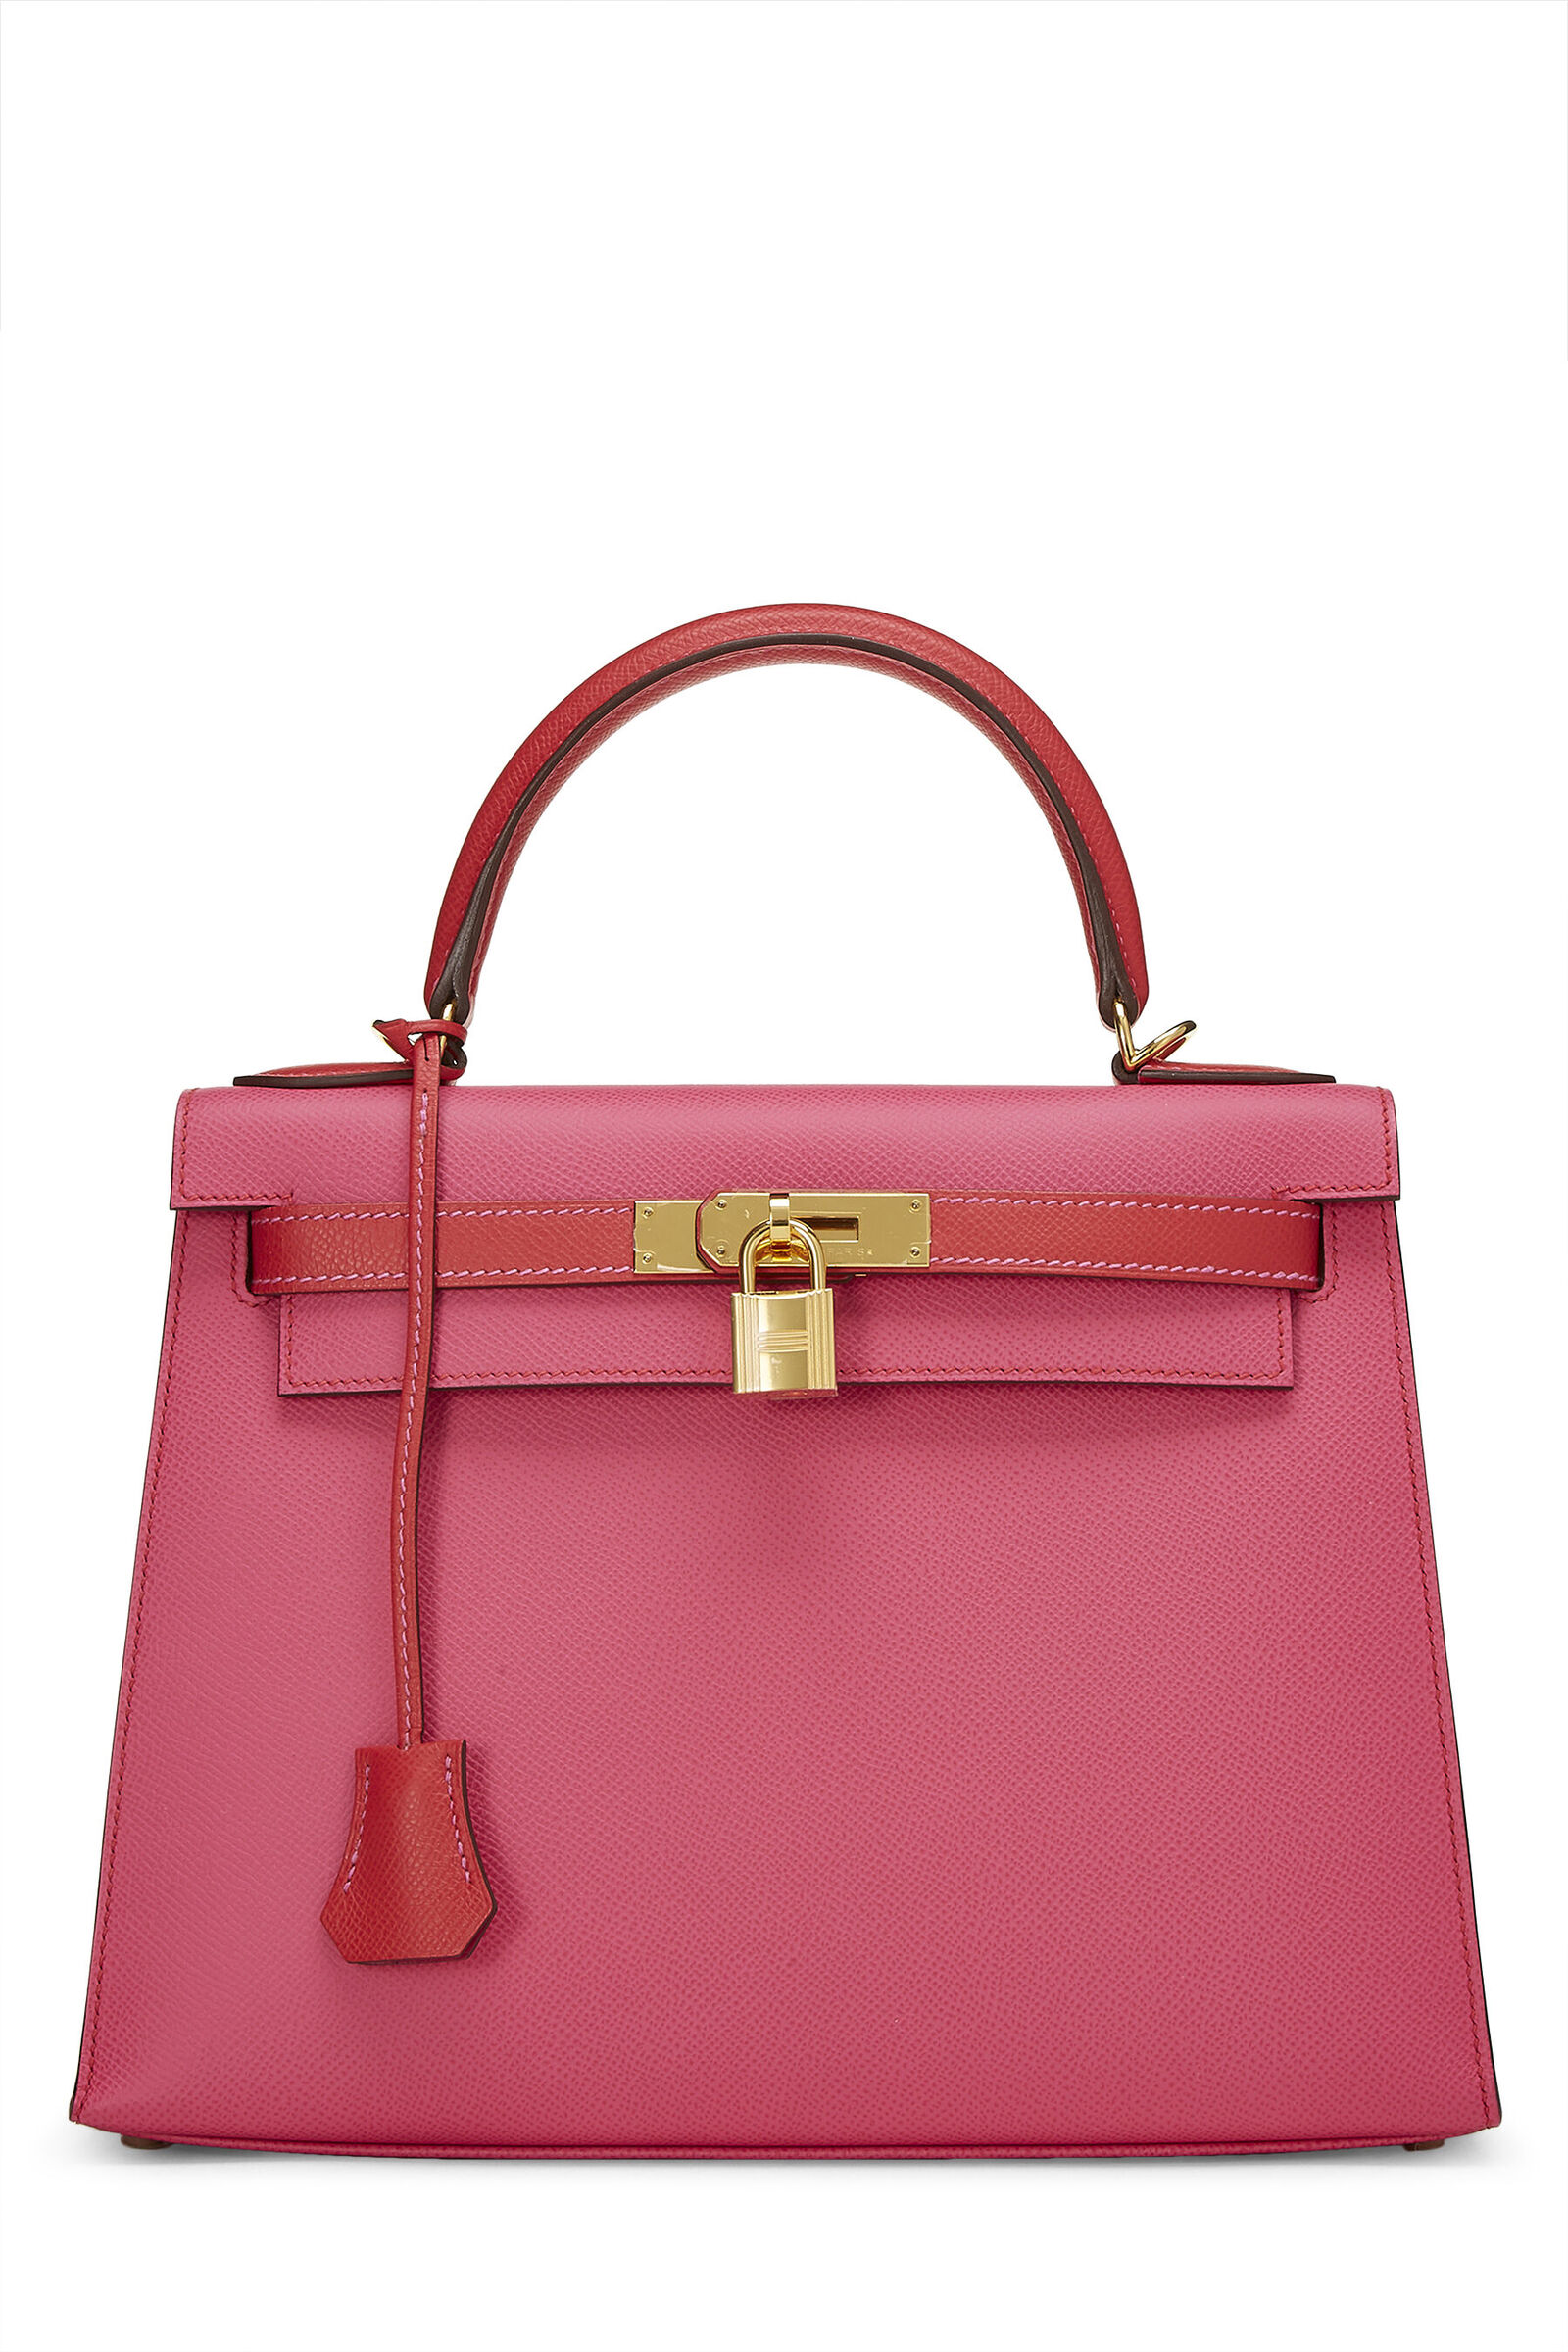 Hermes Birkin Bag #accessories, #style, #bag, Birkin, and hermes  #GetTheLook